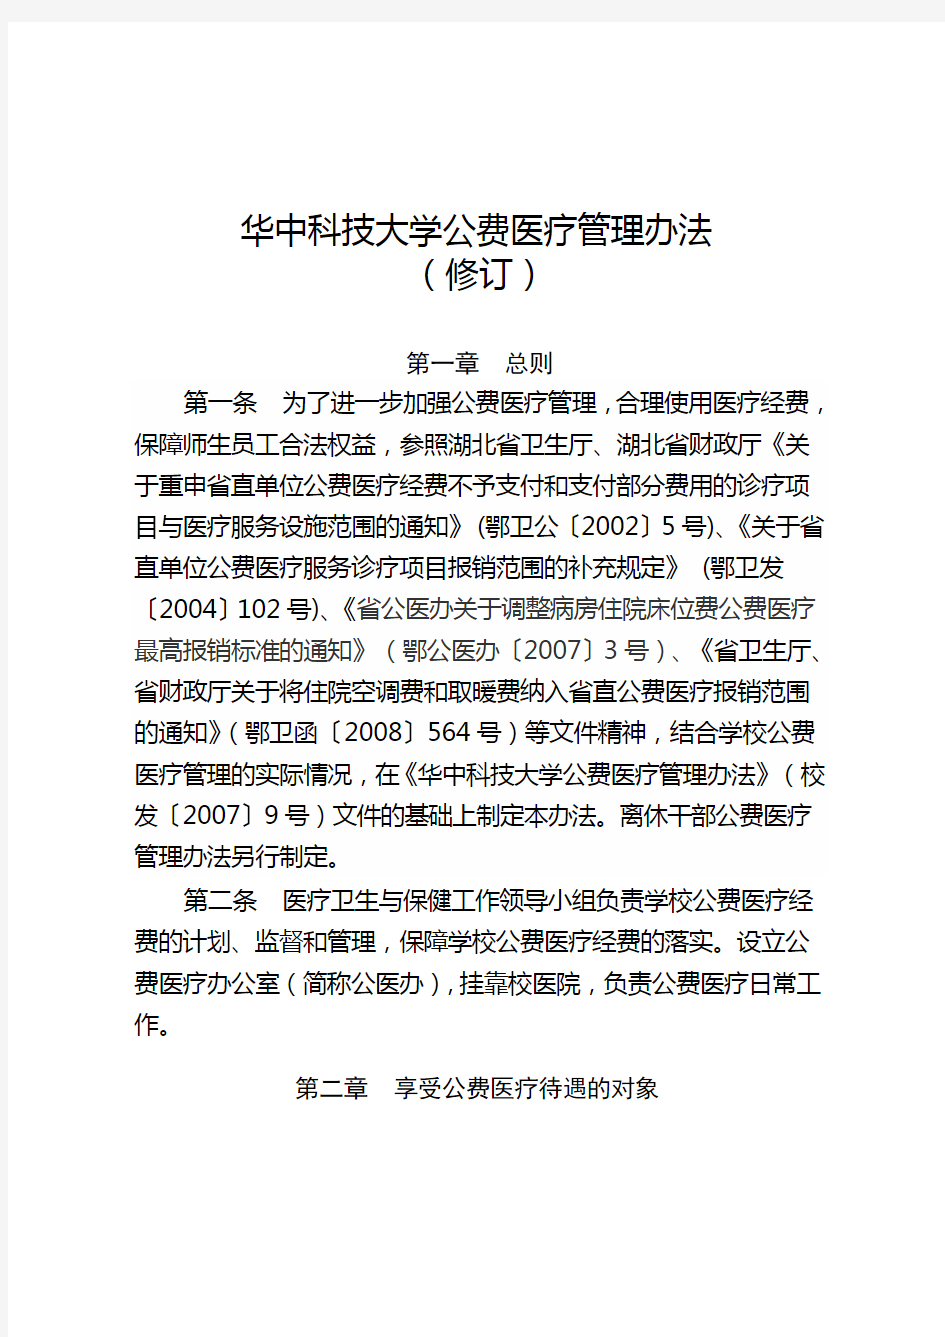 华中科技大学公费医疗管理办法(修订)